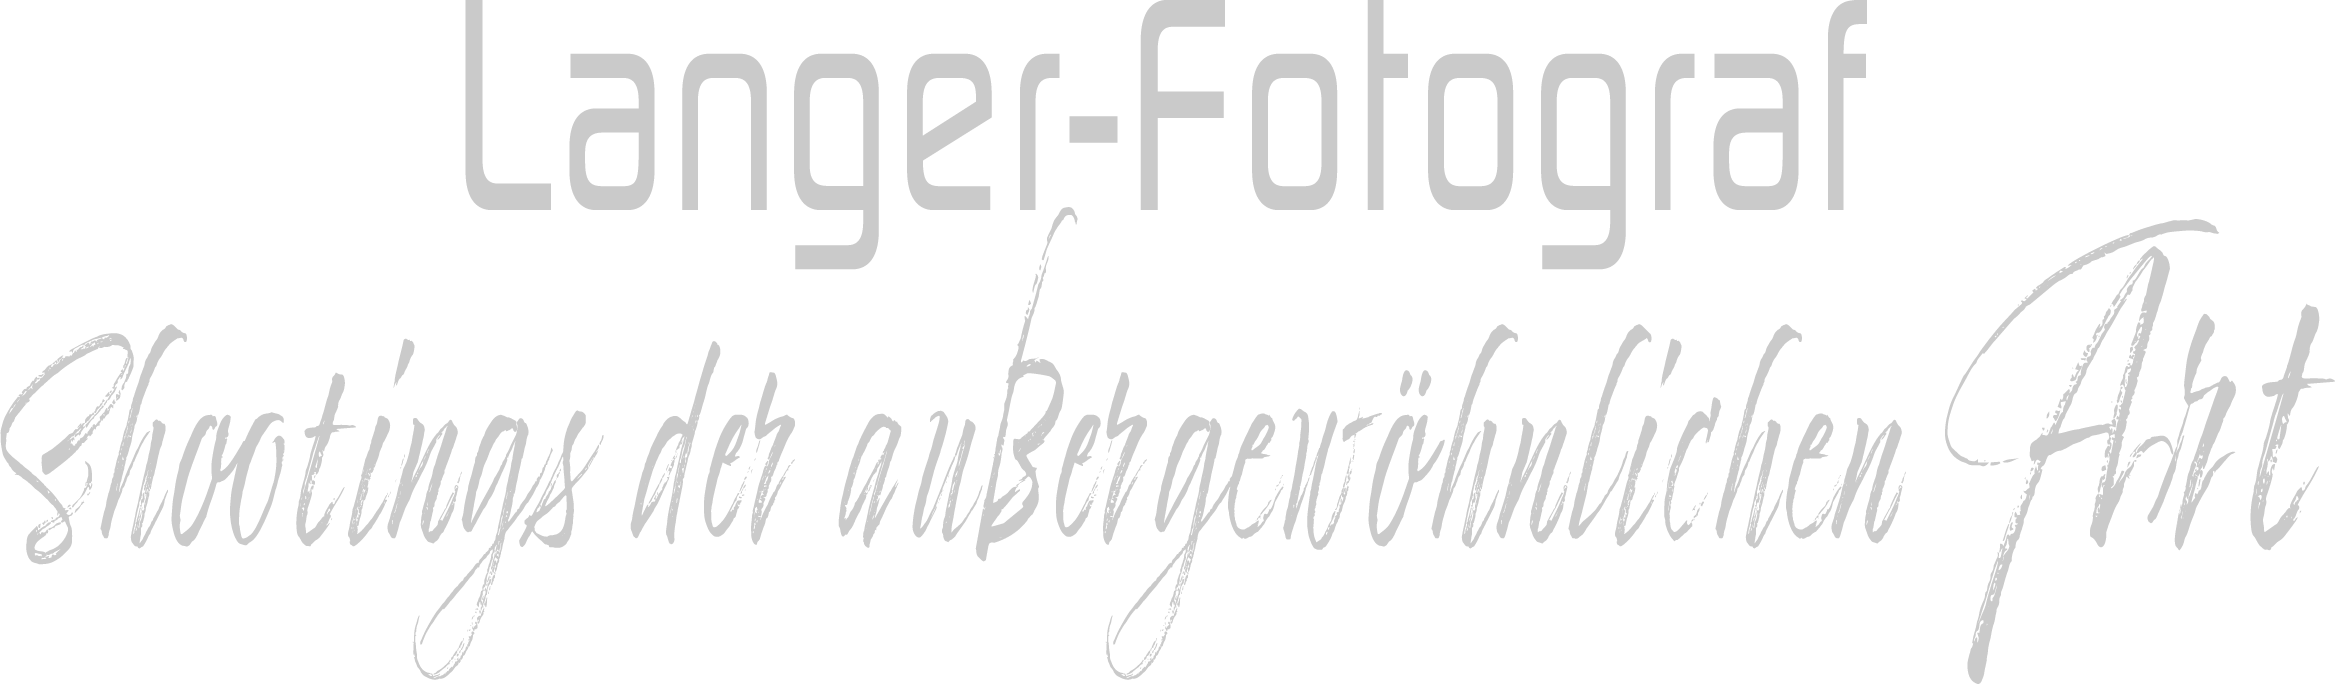 langer-fotograf.de